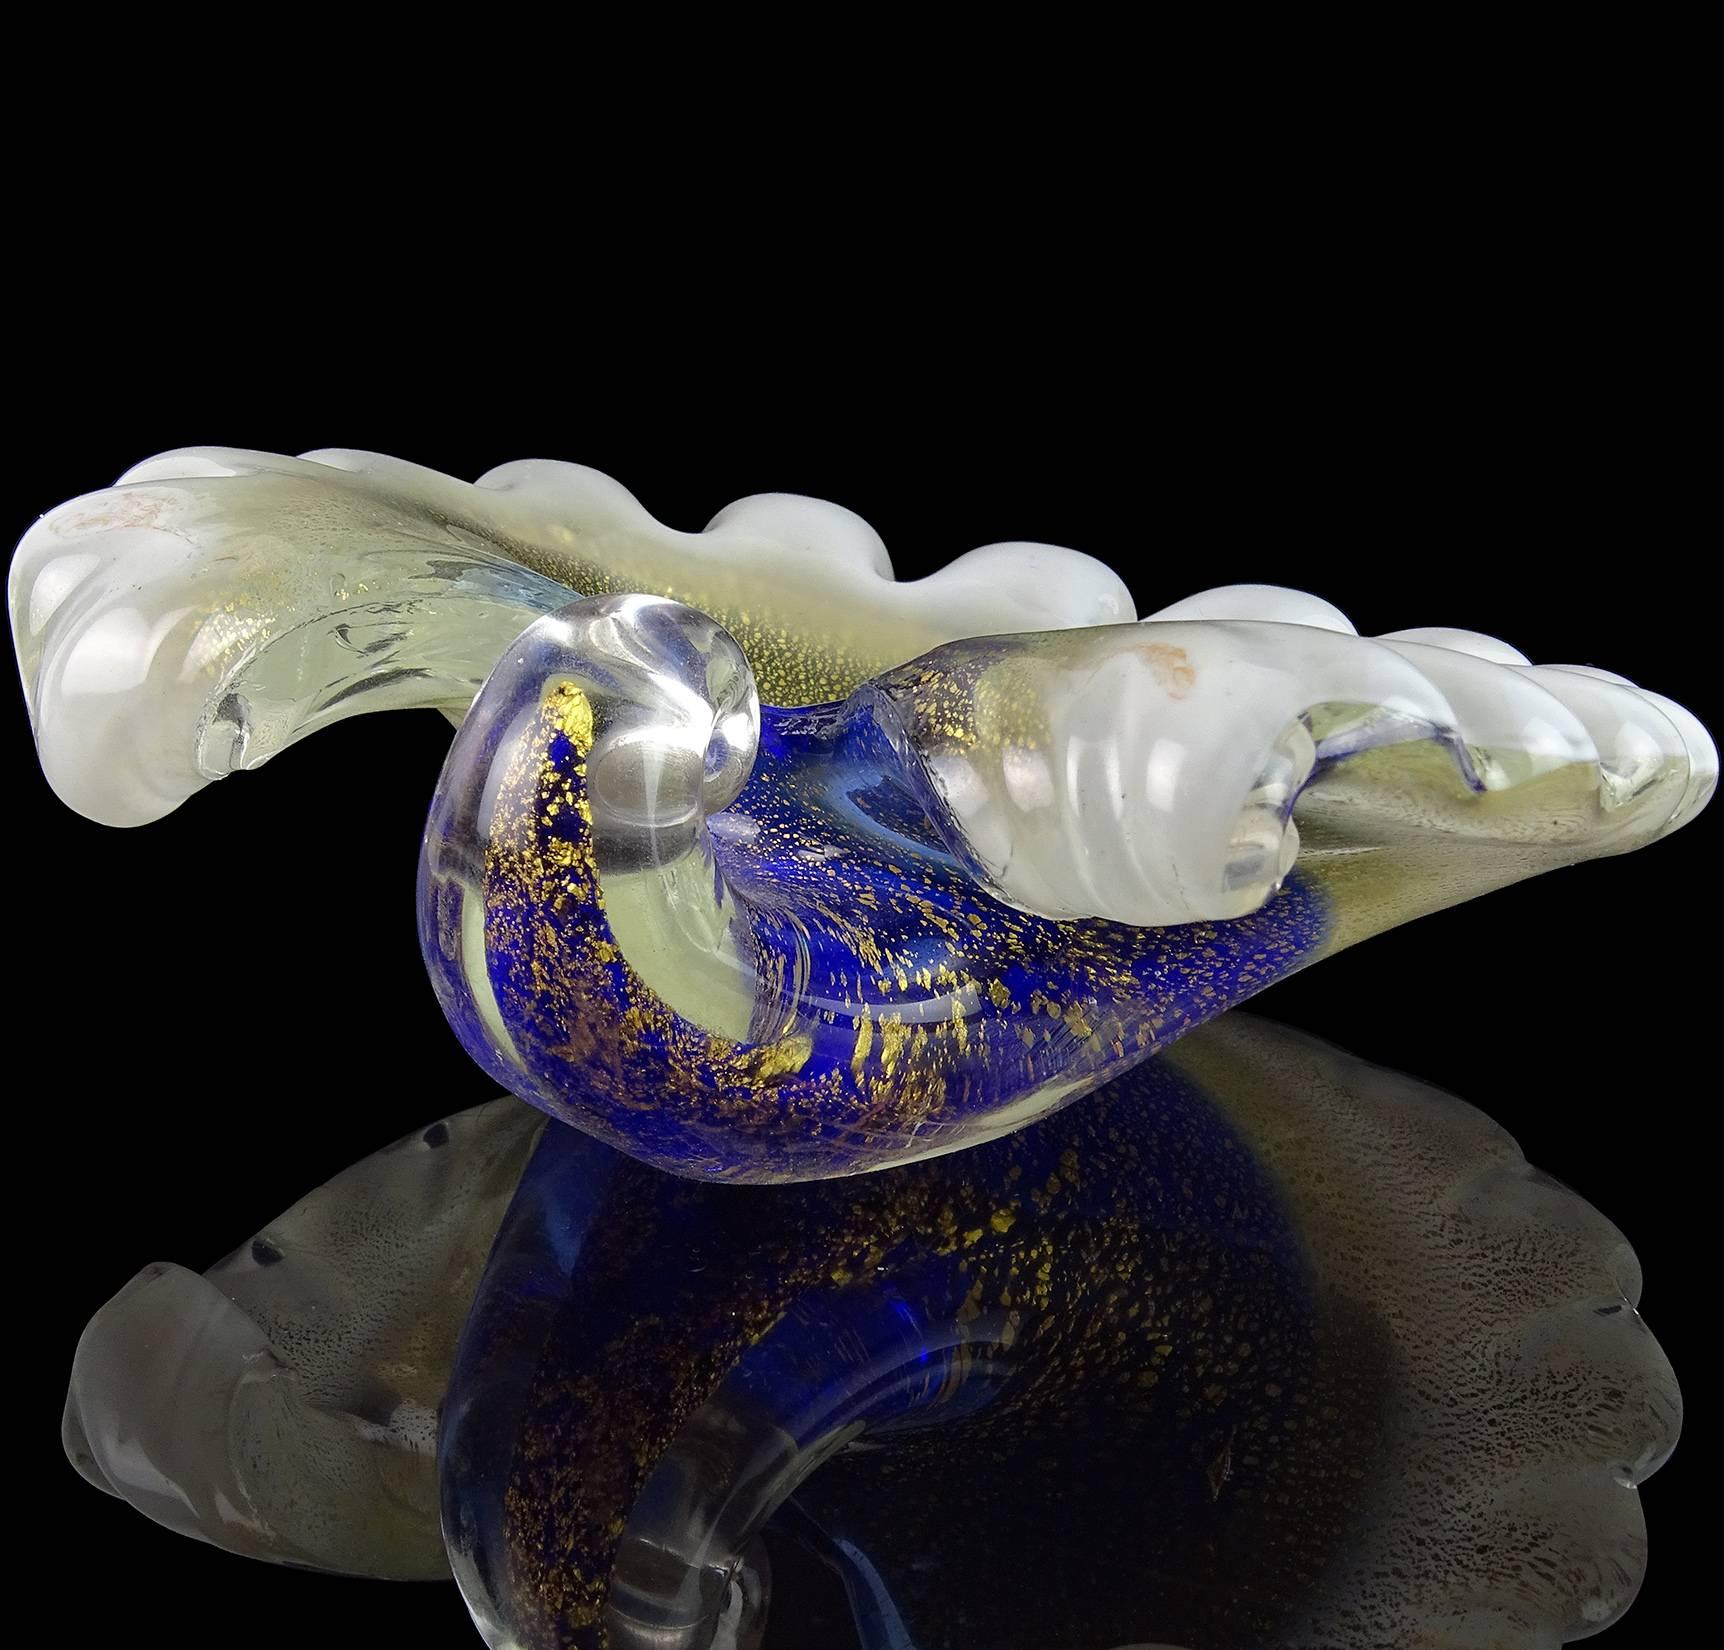 Schöne Vintage Murano mundgeblasen blau, weiß und Goldflecken Kunstglas Muschel Schüssel / Skulptur. Erstellt nach dem Vorbild der Firma Barovier e Toso. Es ist außen reichlich mit Blattgold überzogen. Kann als Ausstellungsstück auf jedem Tisch